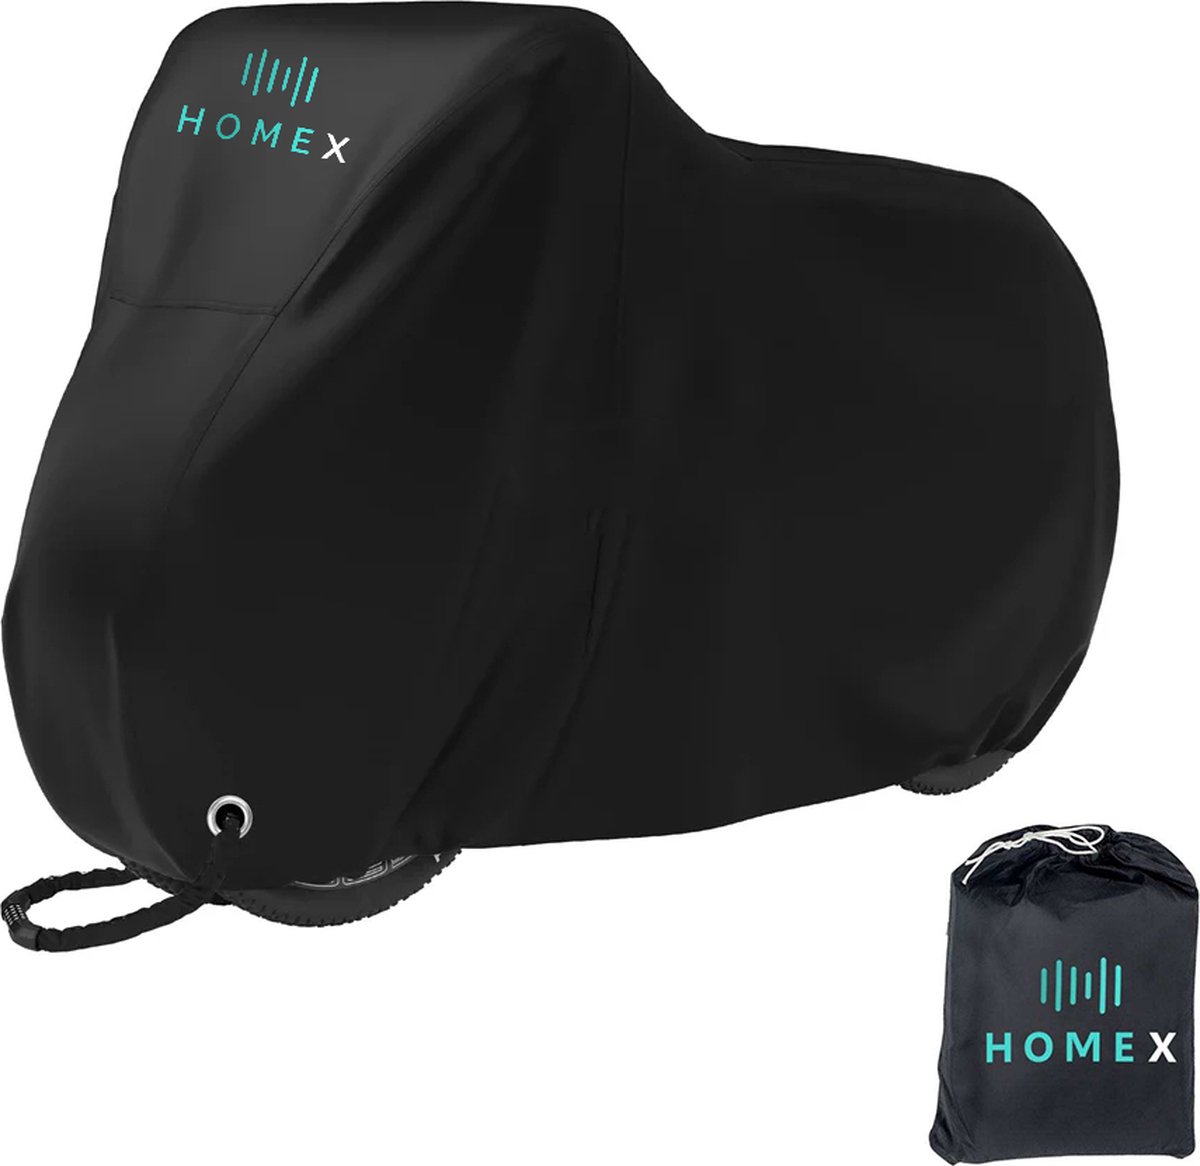 HomeX Fietshoes - Universeel voor alle fietsen - Fietshoes voor 1 of 2 fietsen - Hoes voor scooter - 420D Oxford - Waterdicht - Ultra sterk - Incl. opbergzak